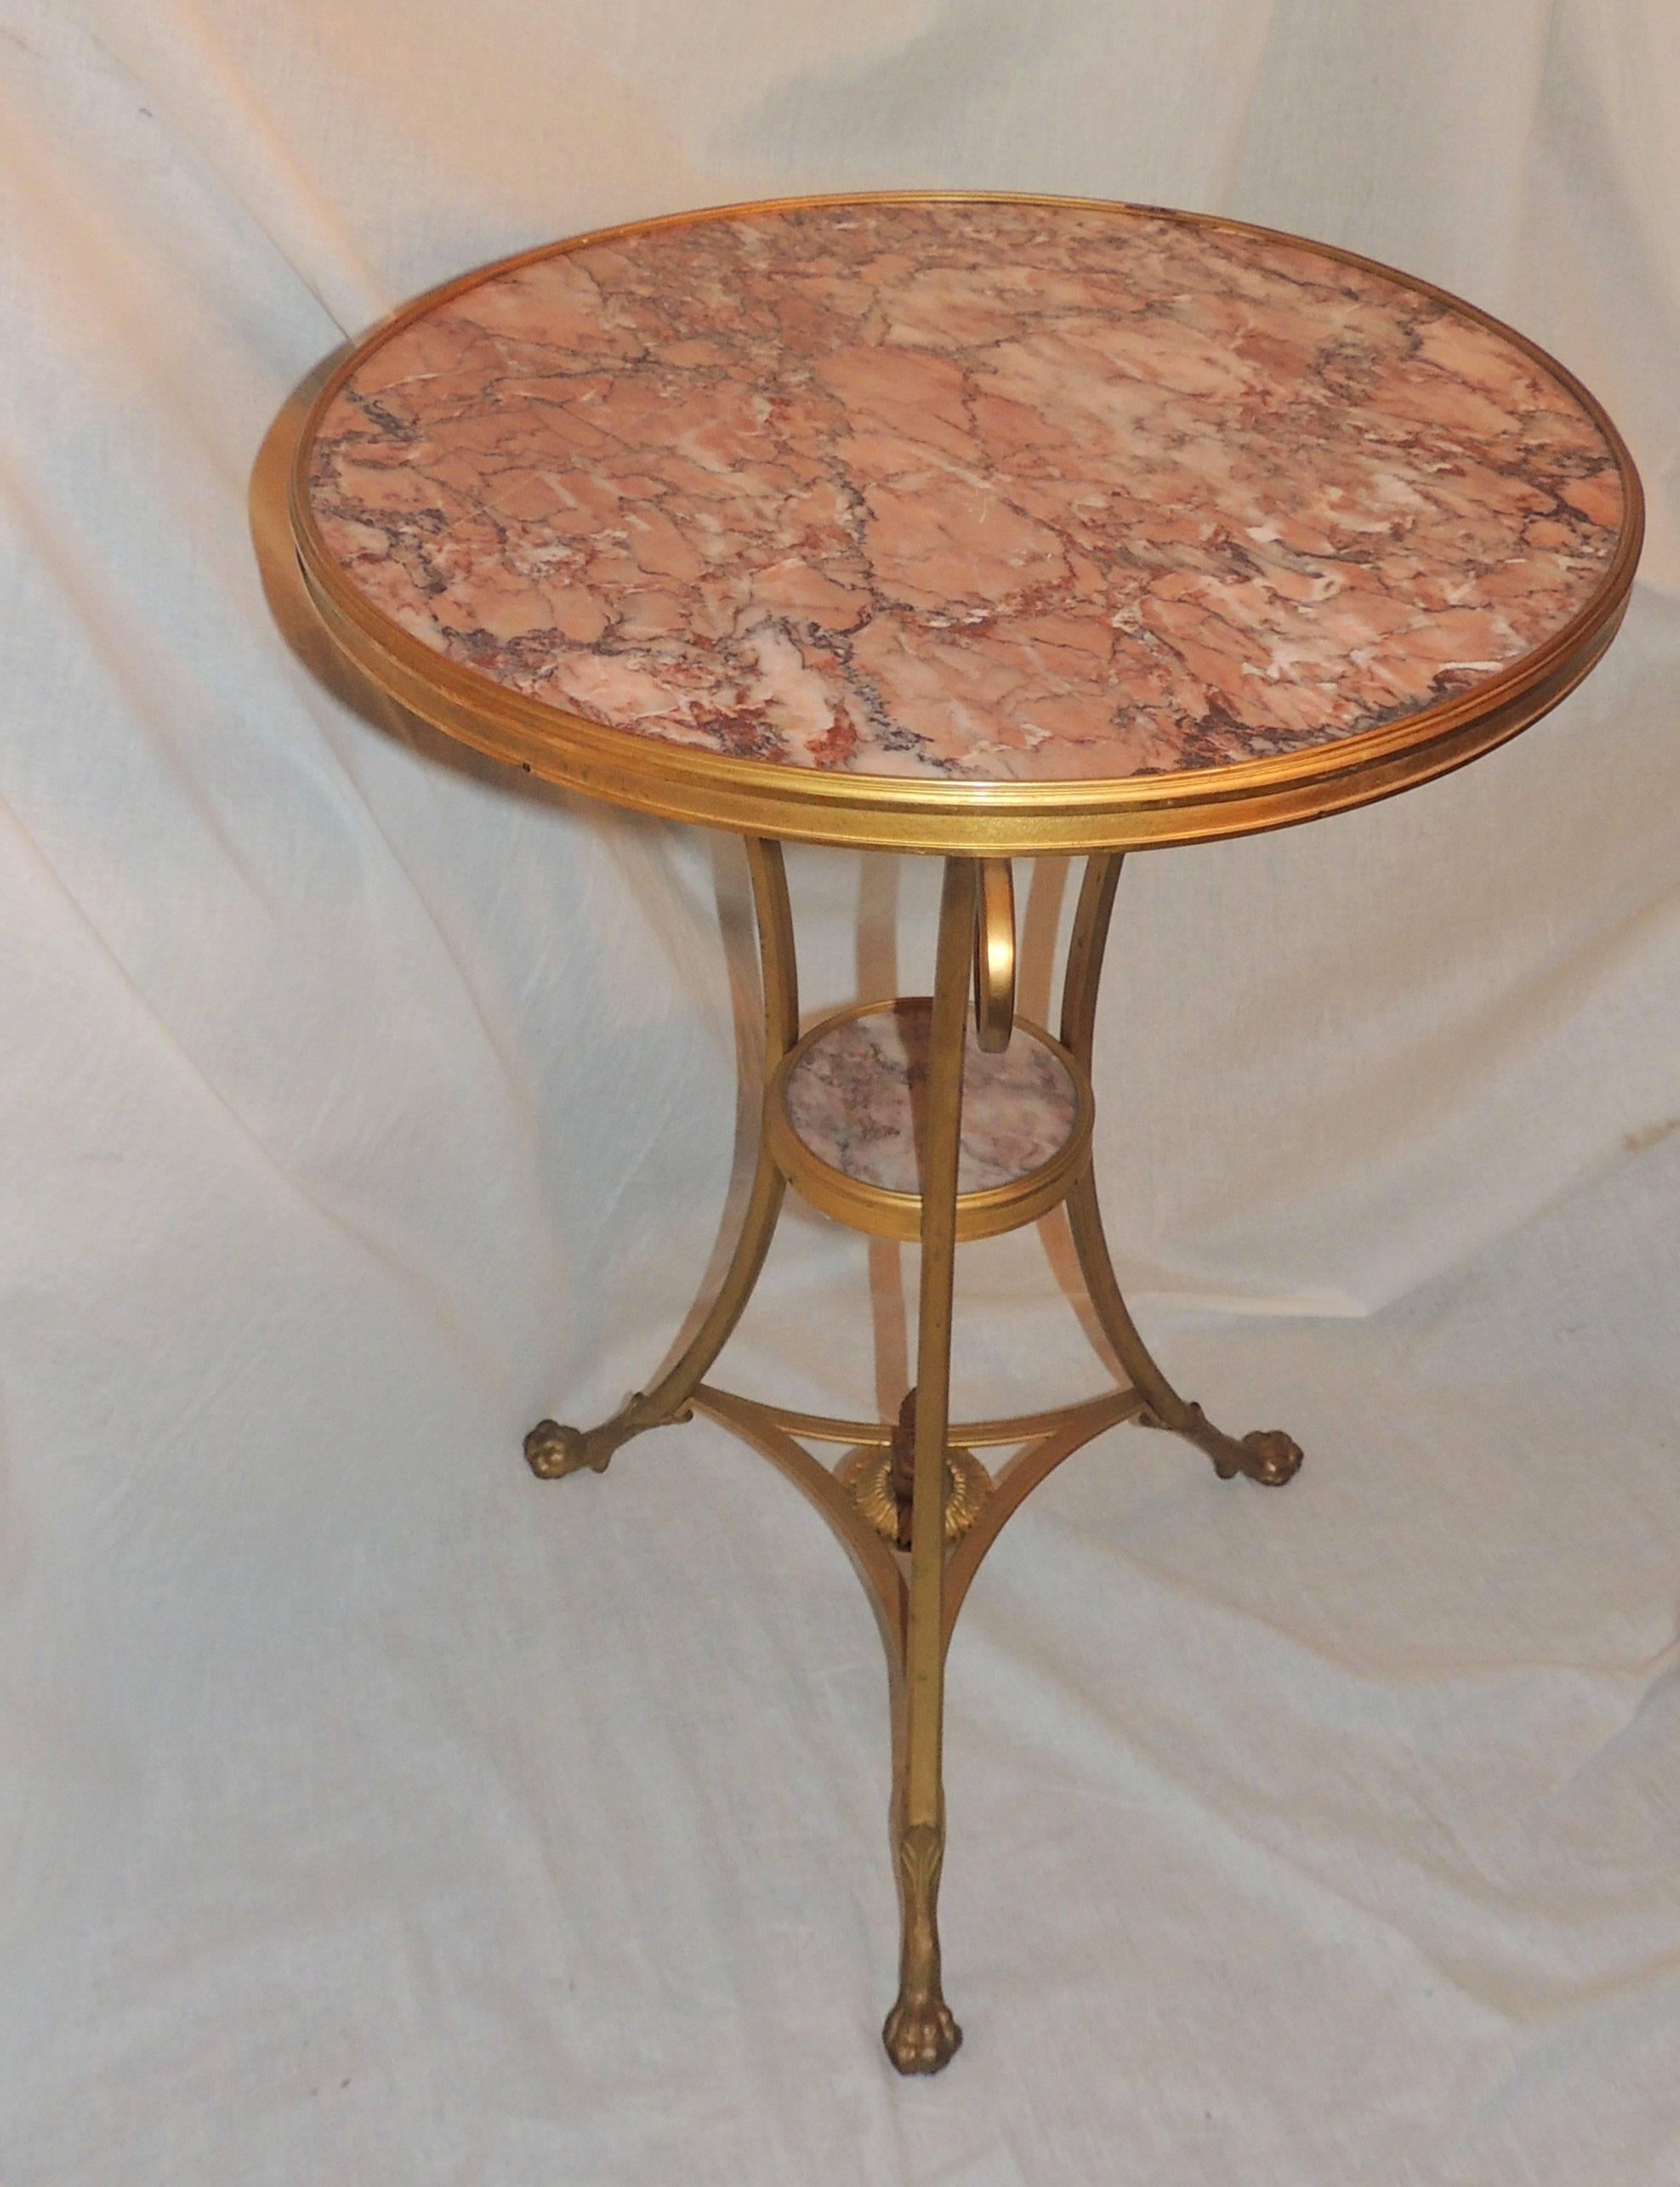 
Merveilleuse table de guéridon française en bronze gravé, bronze doré et marbre rouge avec une tablette centrale de 6